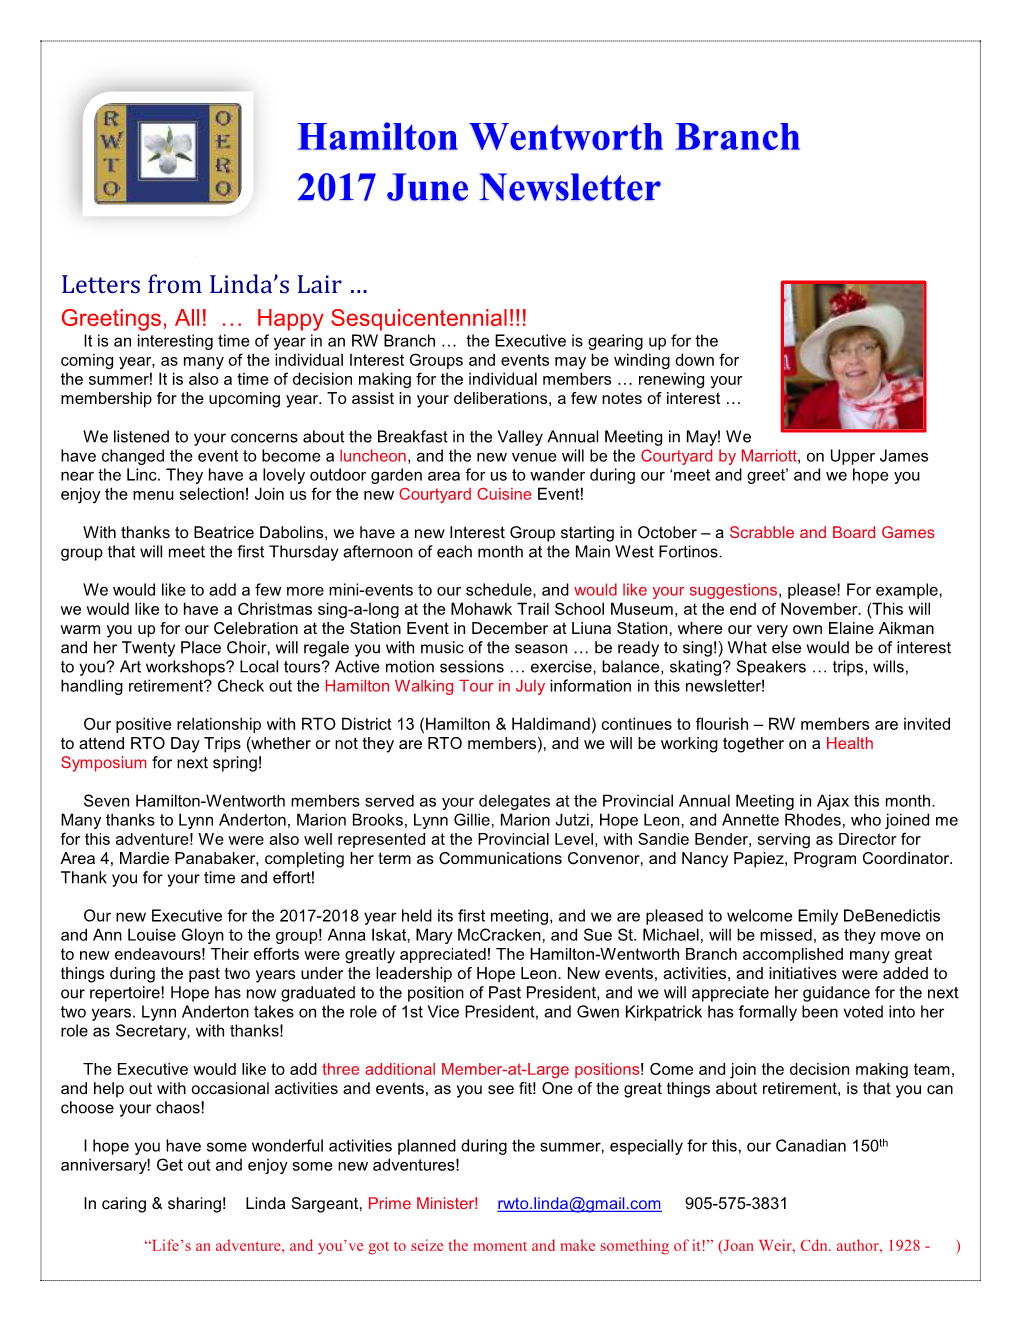 Hamilton Wentworth Branch 2017 June Newsletter